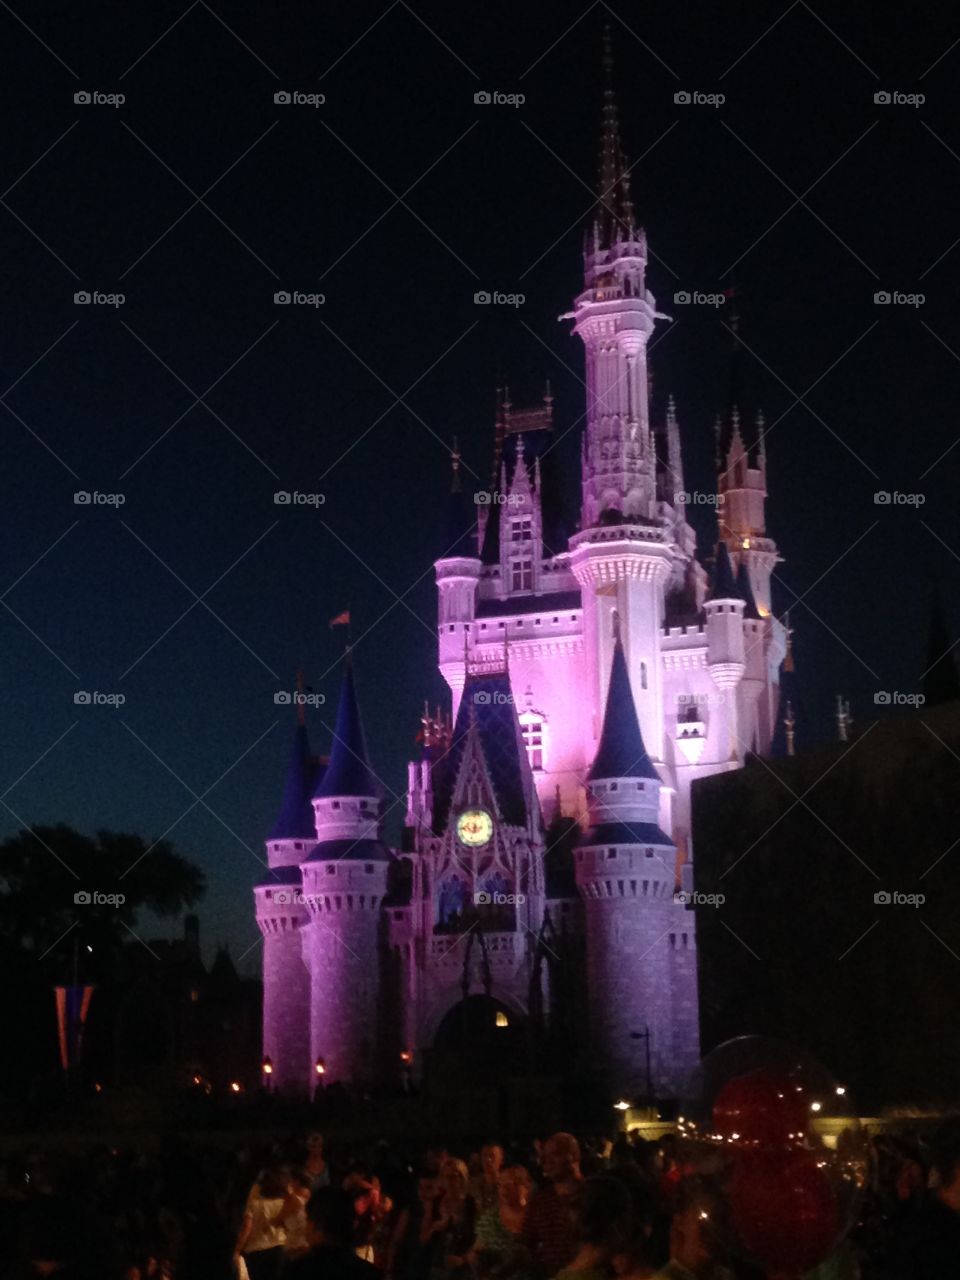 Cinderella's castle